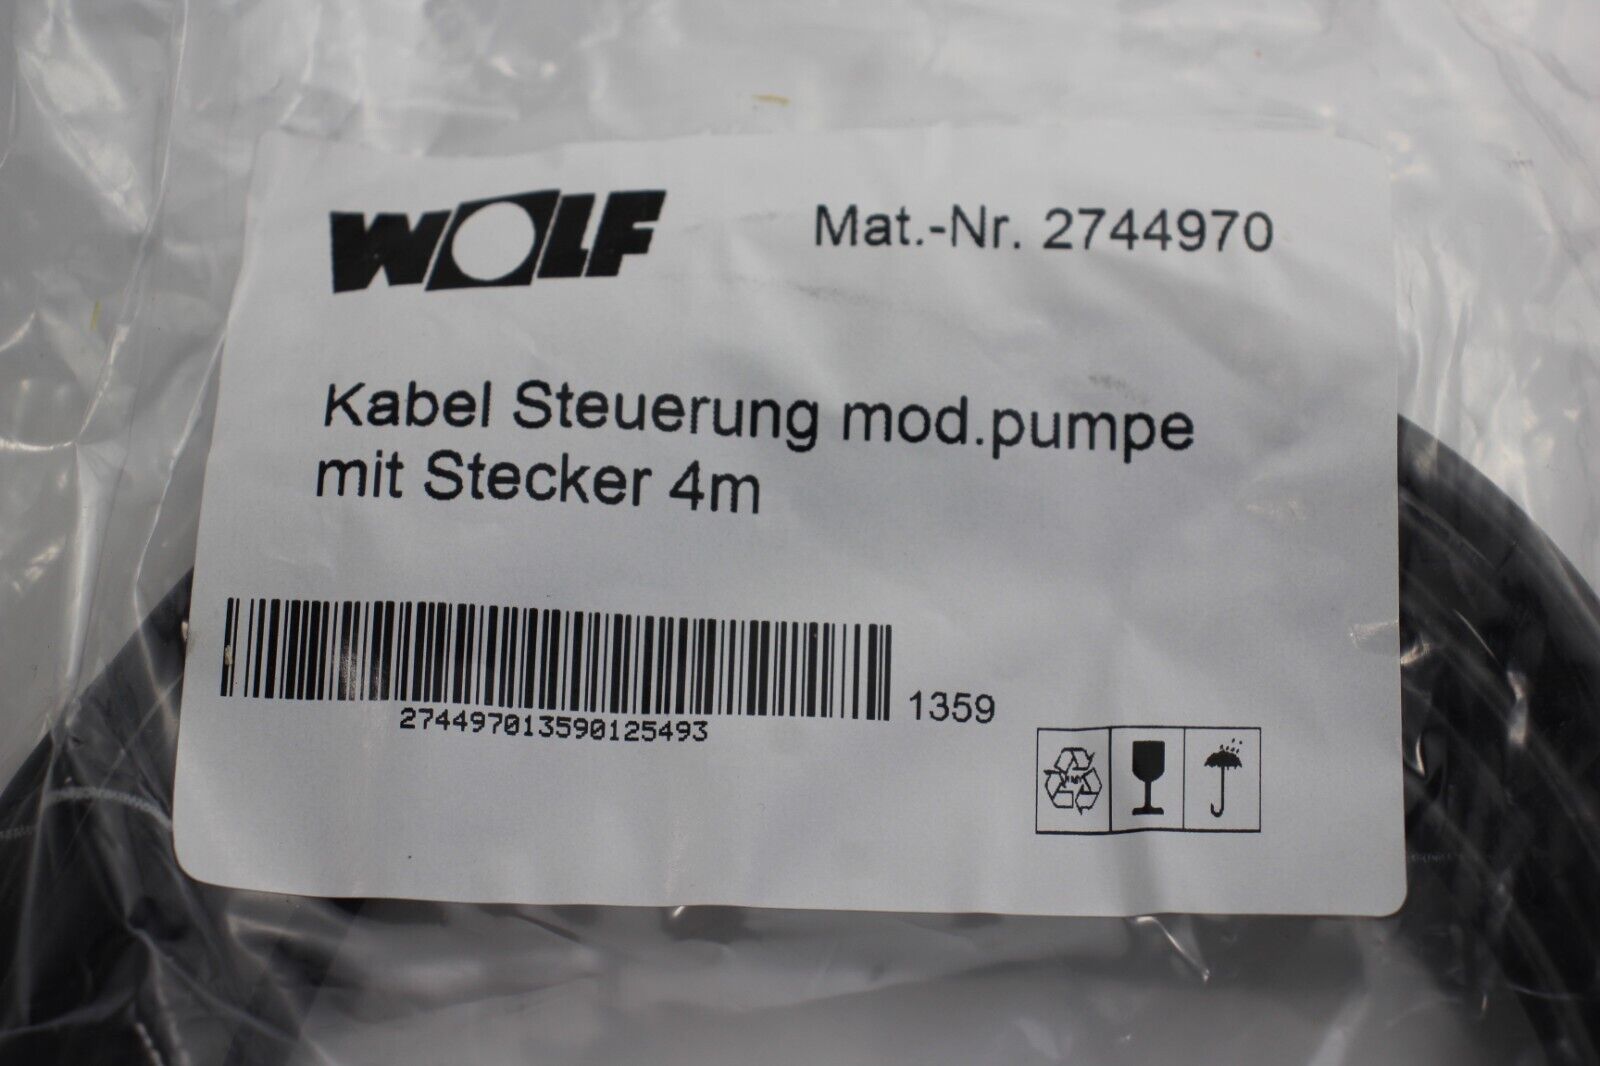 Wolf Kabel Steuerung mod. Pumpe 4m für CPM-1-70 2744970 NEU in OVP